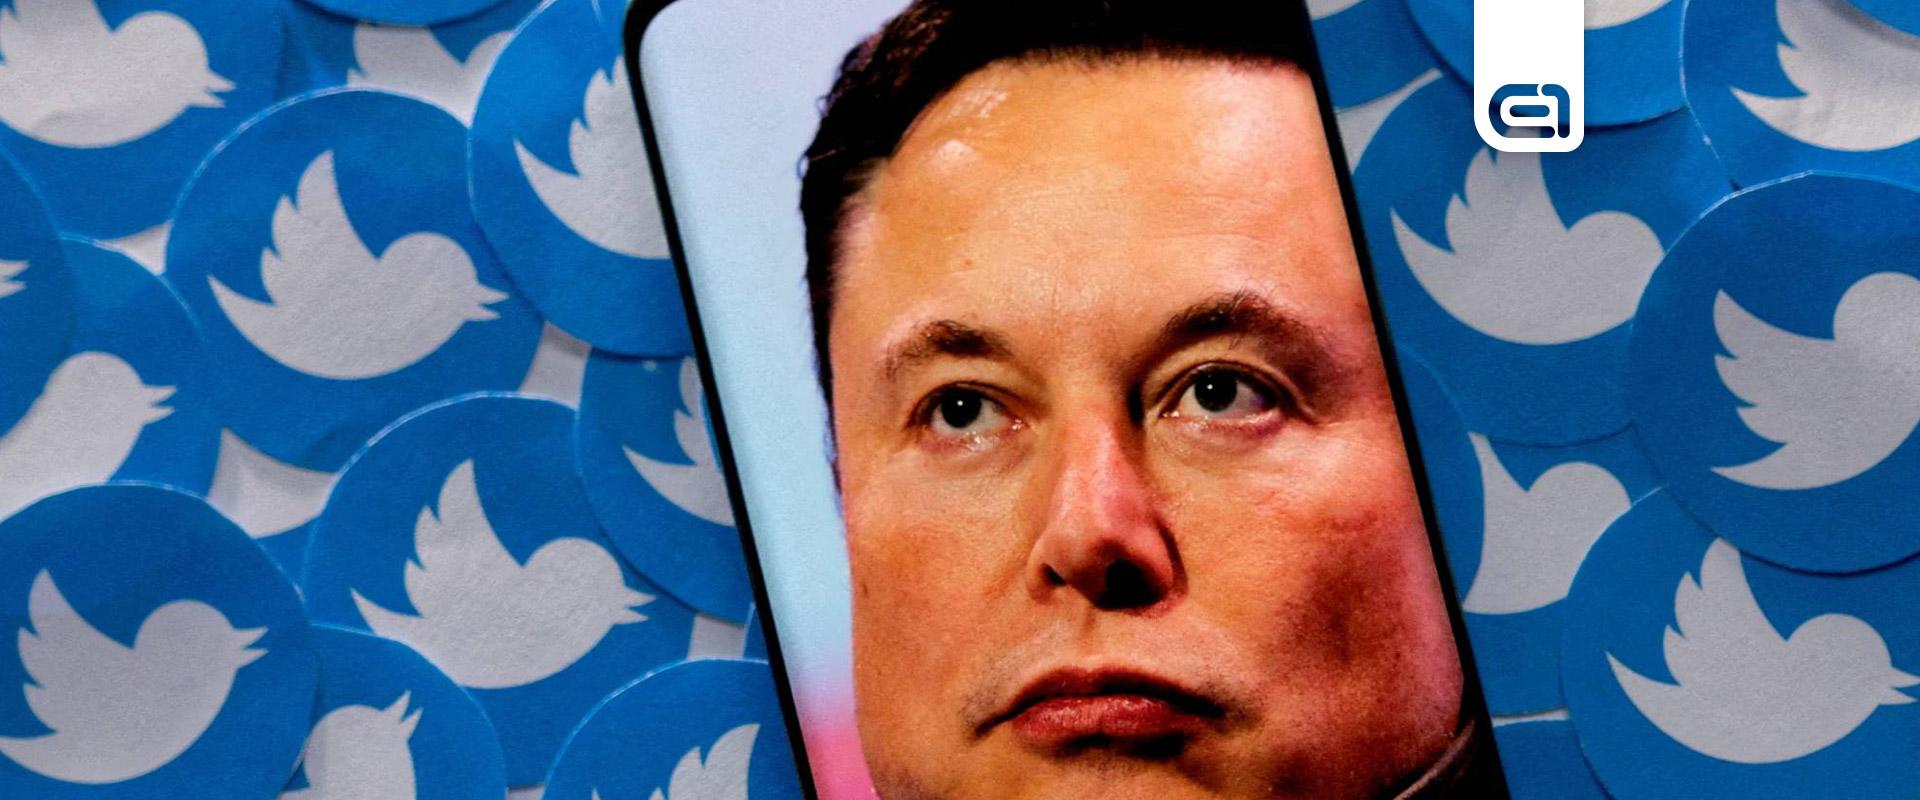 Twitter: Elon Musk tovább csökkenti az alkalmazottak számát